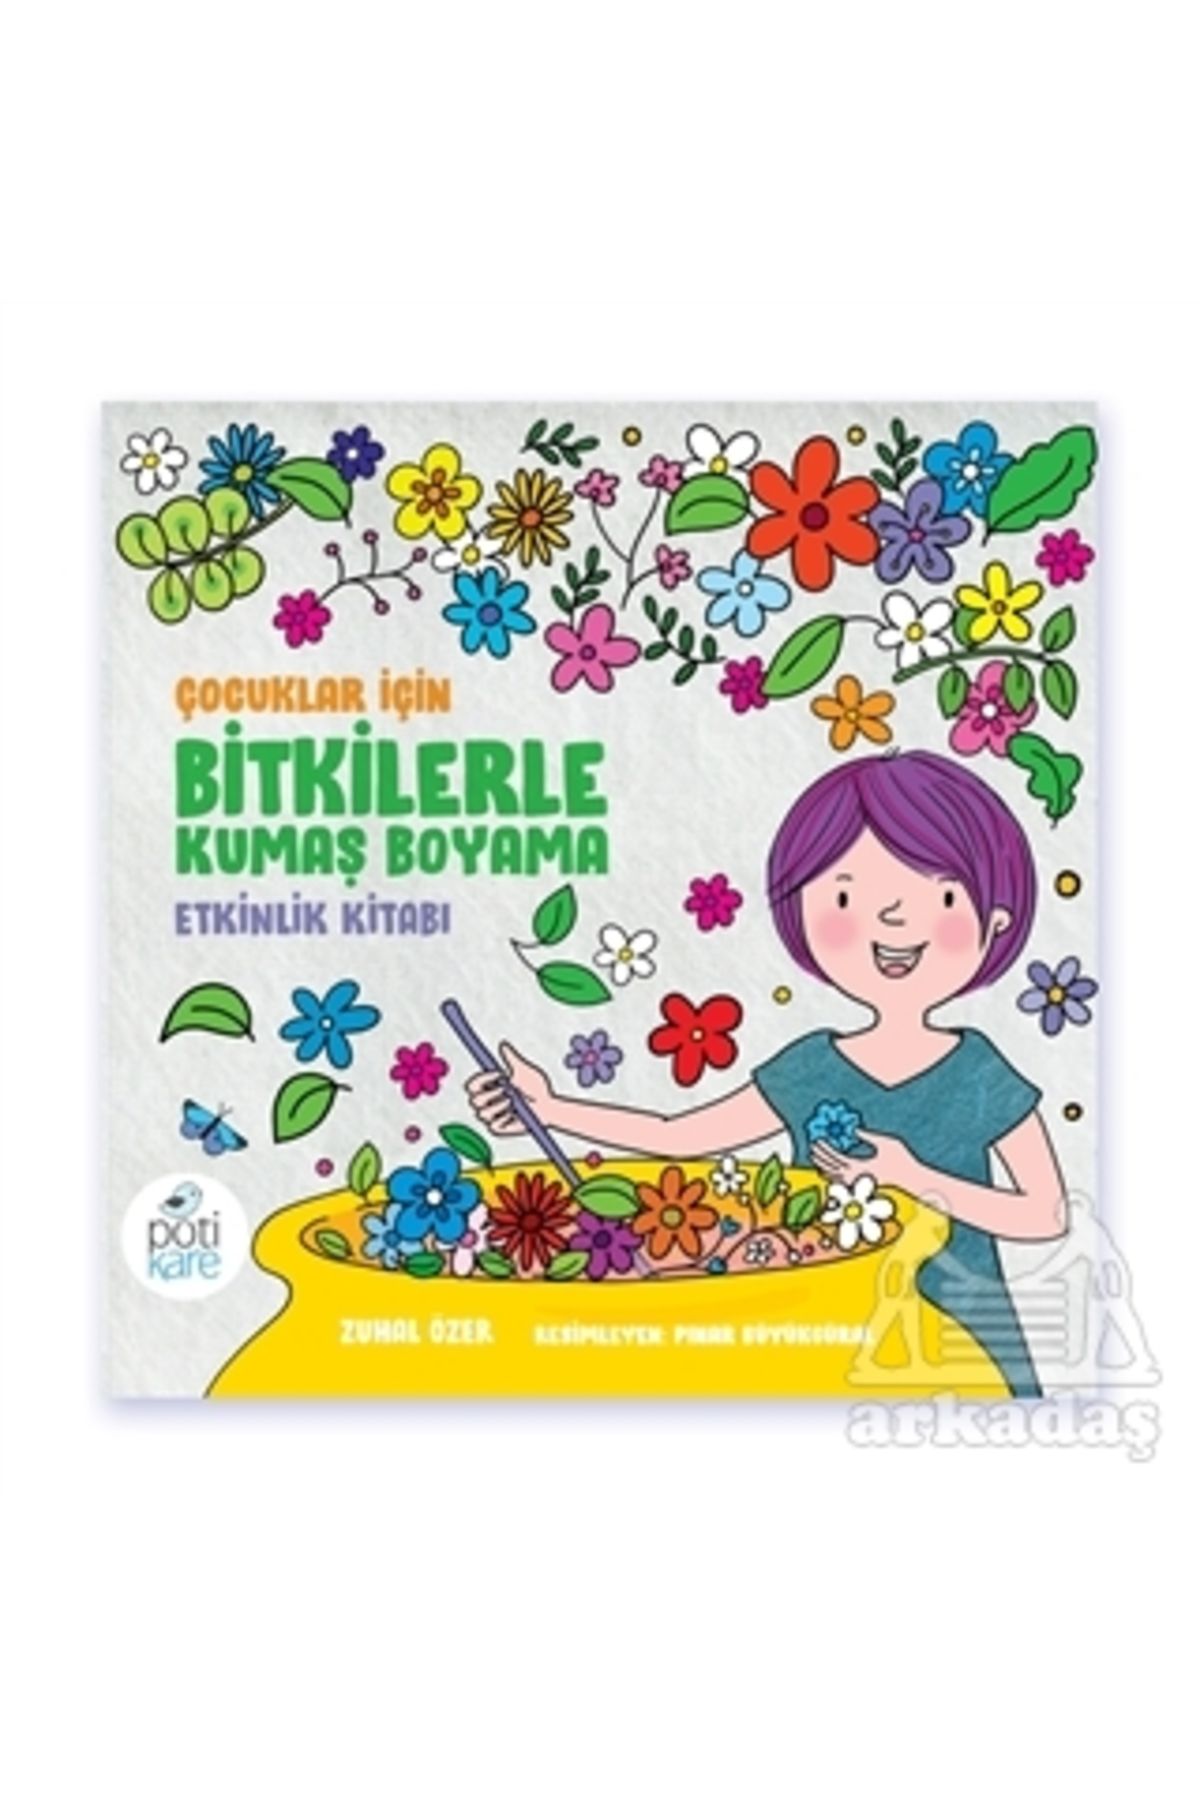 Pötikare Yayınları Çocuklar İçin Bitkilerle Kumaş Boyama Etkinlik Kitabı